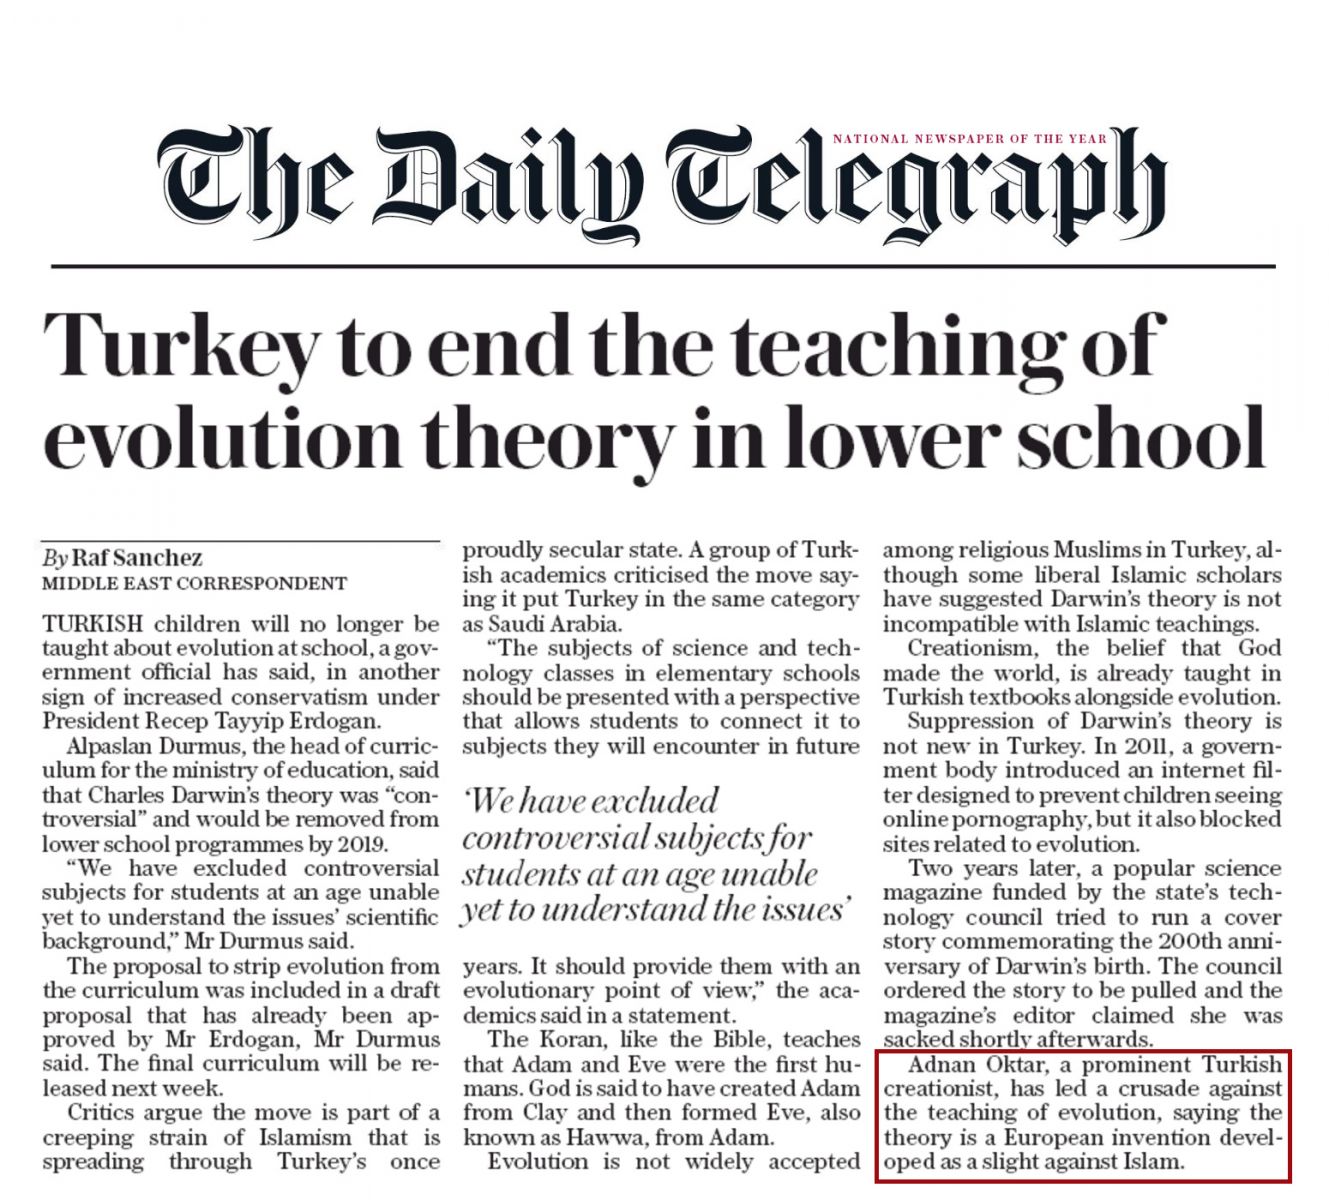 Daily Telegraph: Ünlü Yaratılışçı Adnan Oktar evrim teorisine karşı verdiği mücadeleyi kazandı 